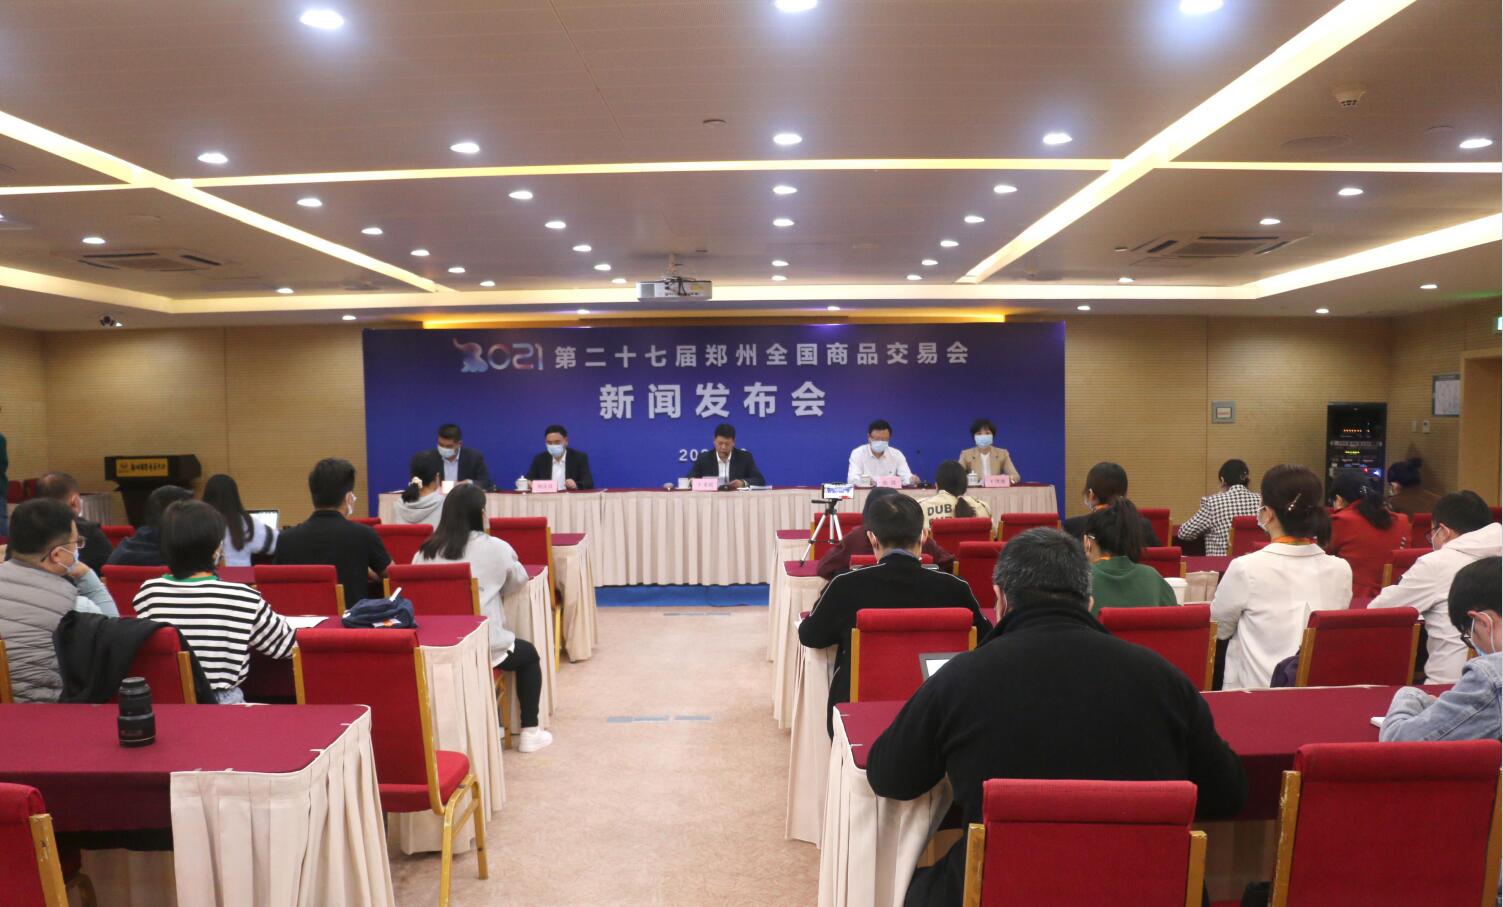 第27届郑州全国商品交易会 全面营造“促消费、惠民生”主题氛围